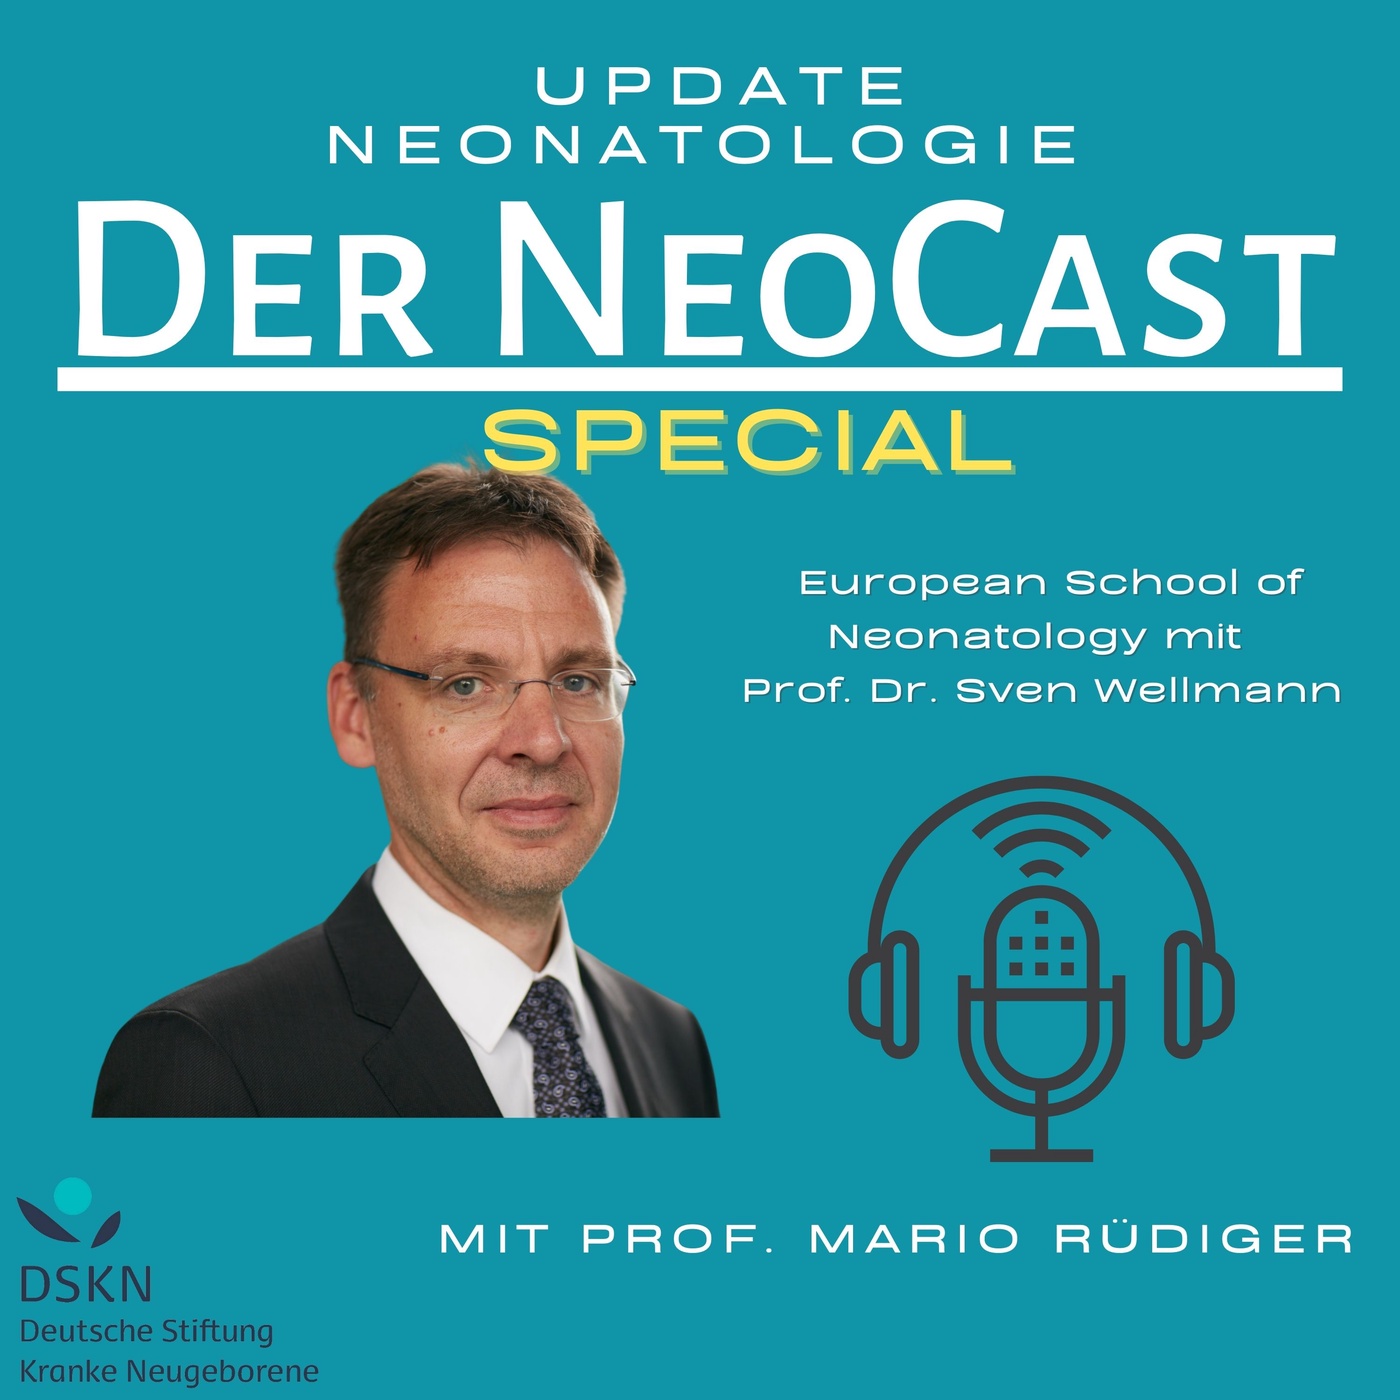 Special European School of Neonatology mit Prof. Dr. Sven Wellmann